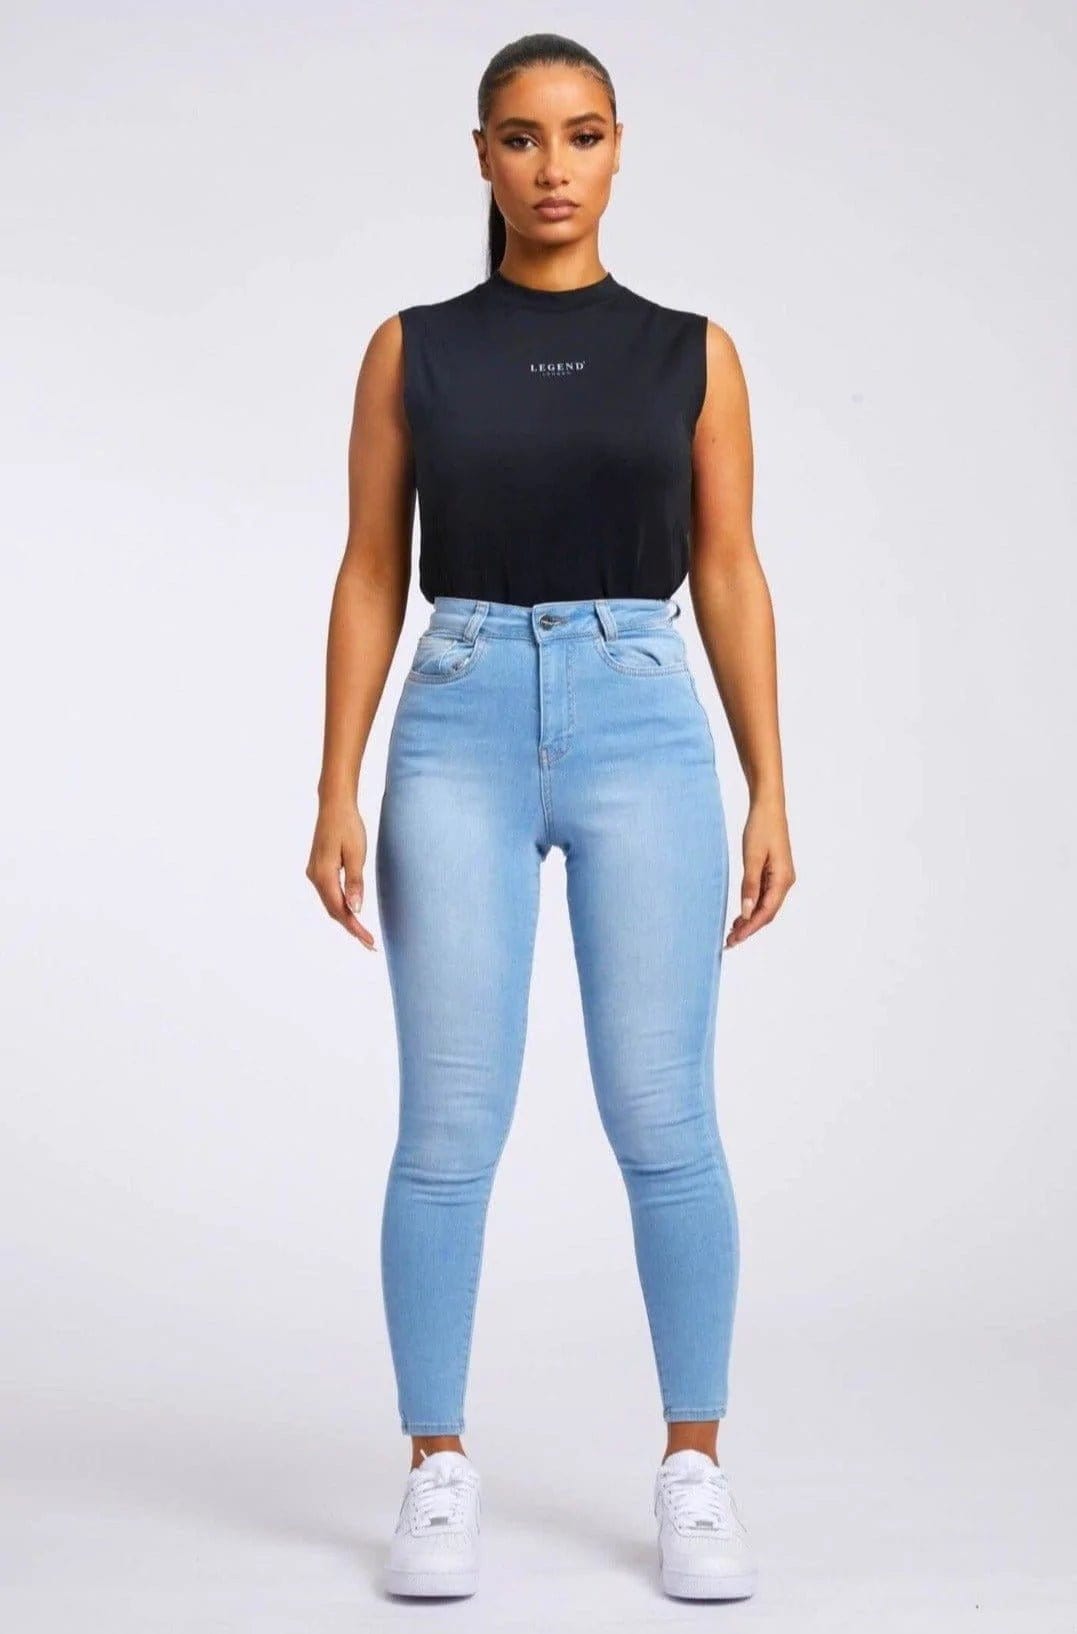 http://www.legendlondon.co/cdn/shop/products/legend-london-women-s-jeans-skinny-jeans-light-blue-32686267138245.webp?v=1678141051